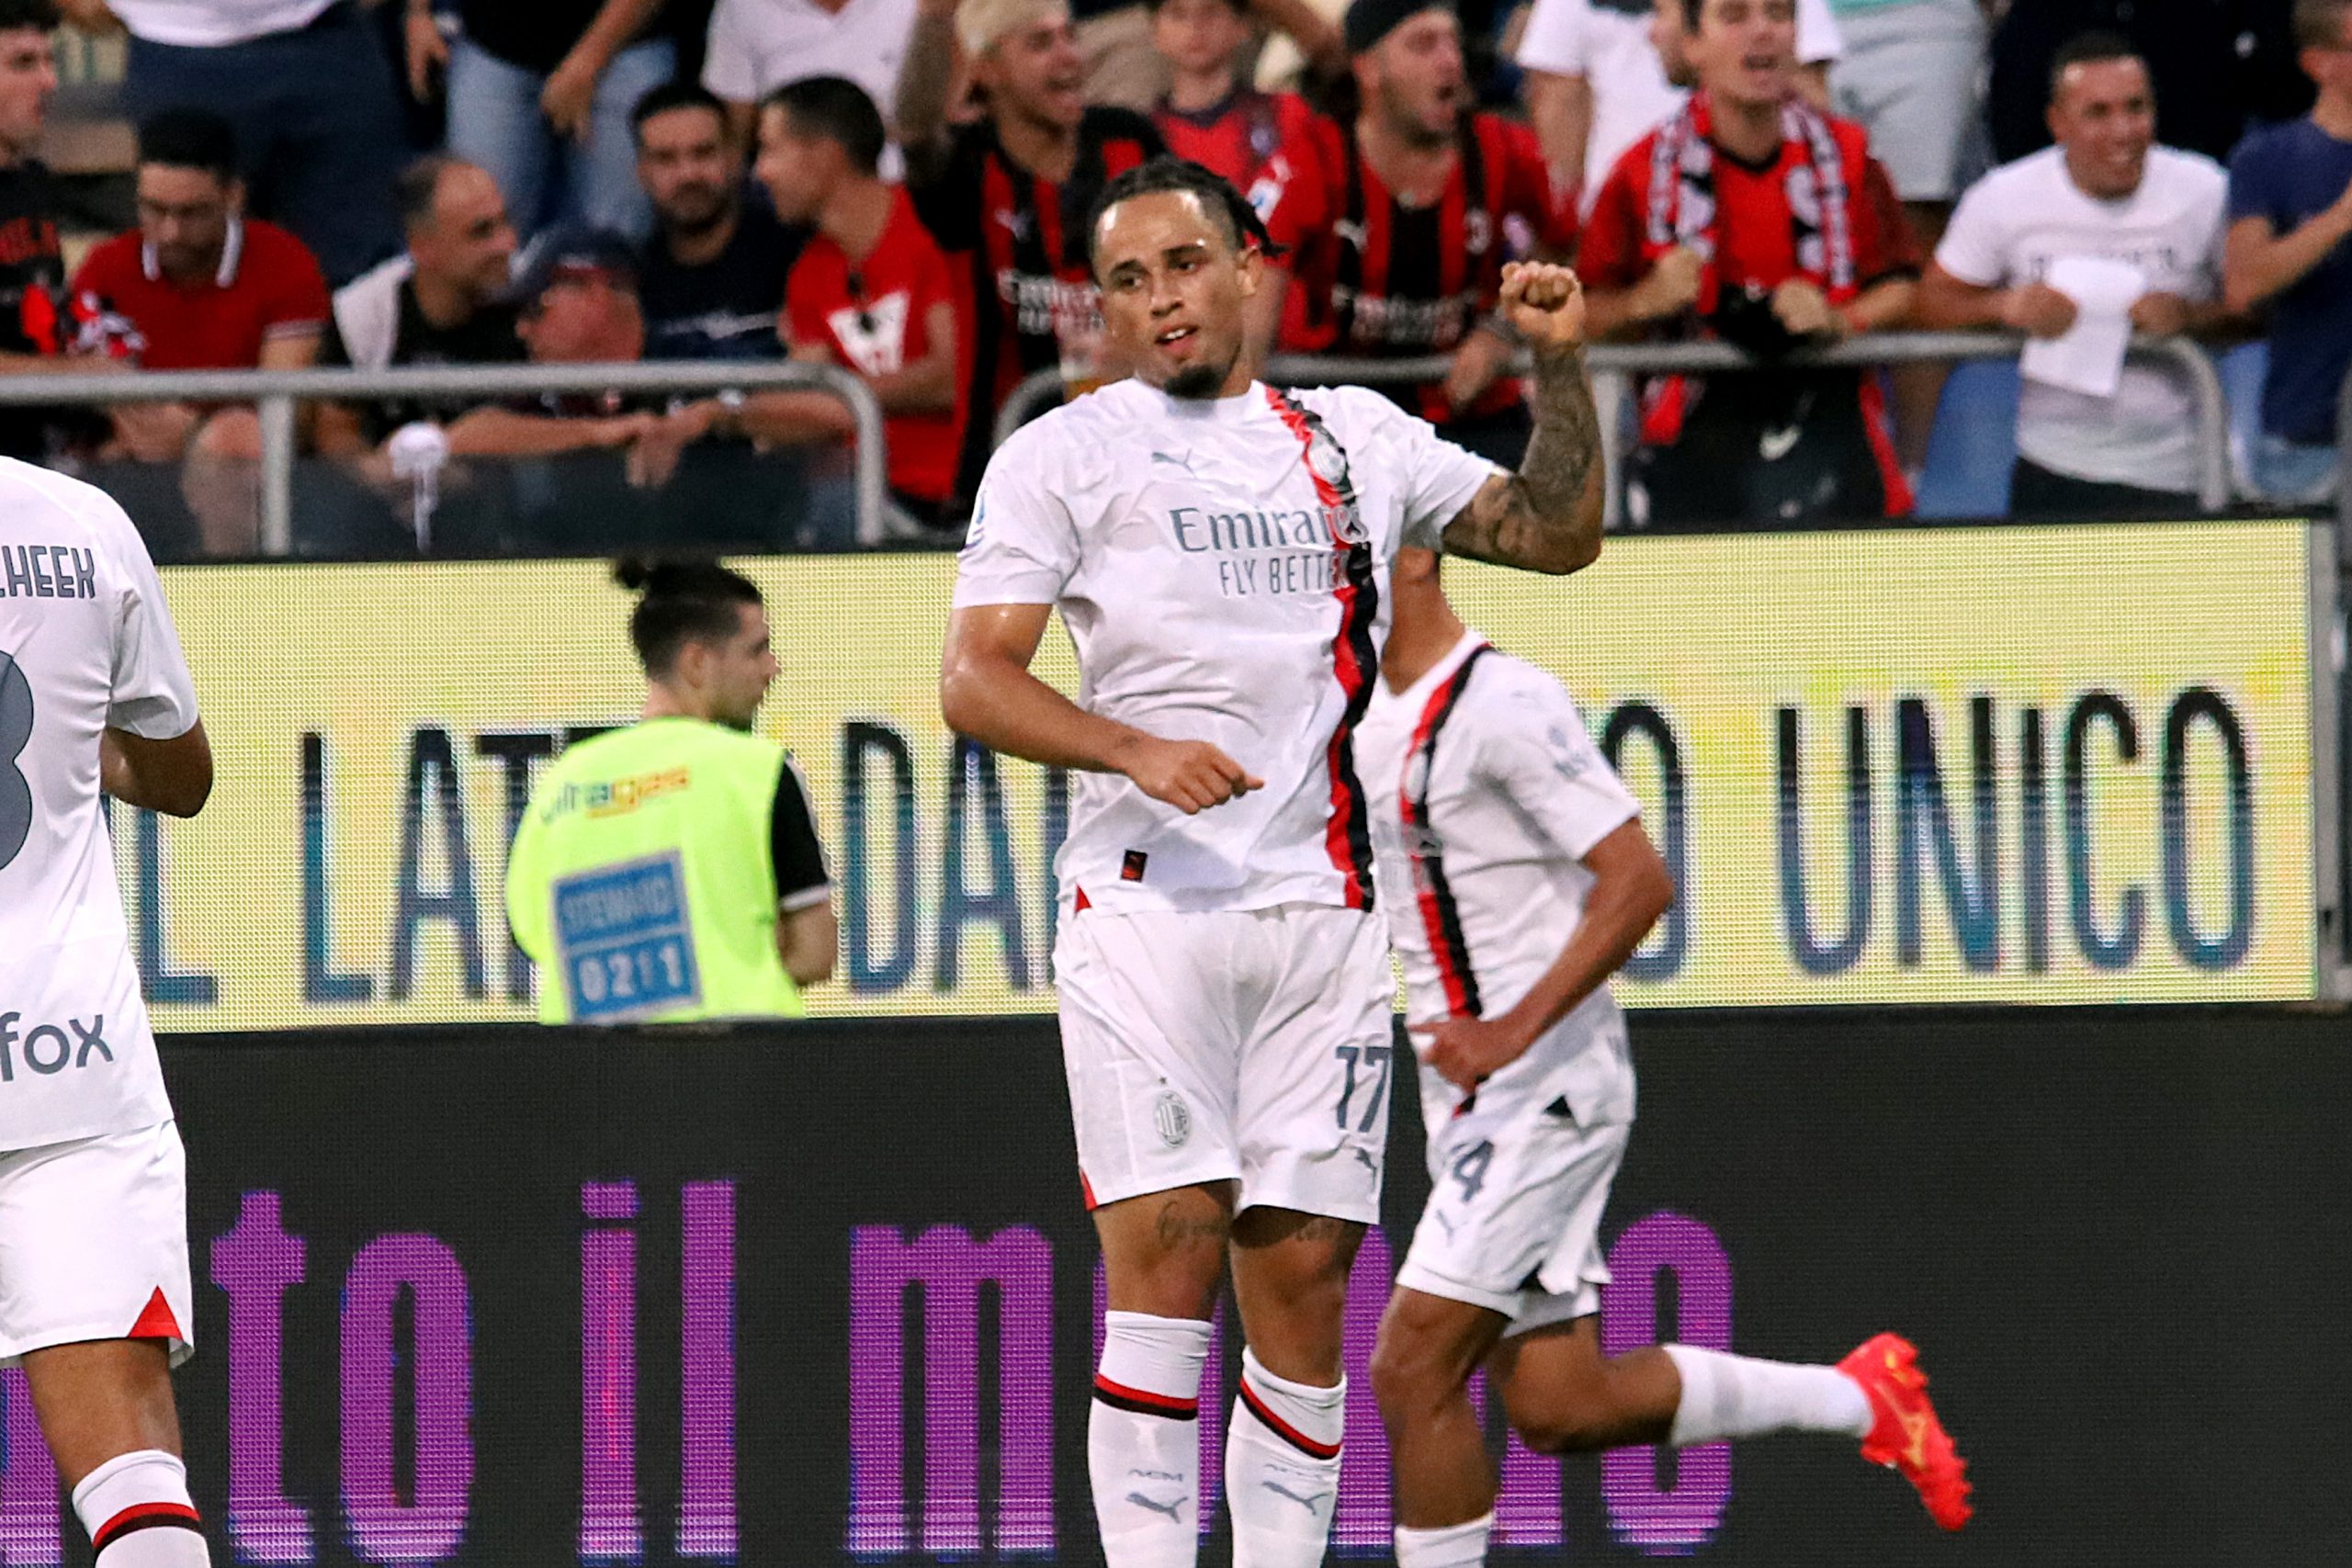 VIDEO – Cagliari Milan 1 3, Serie A: gol e highlights della partita